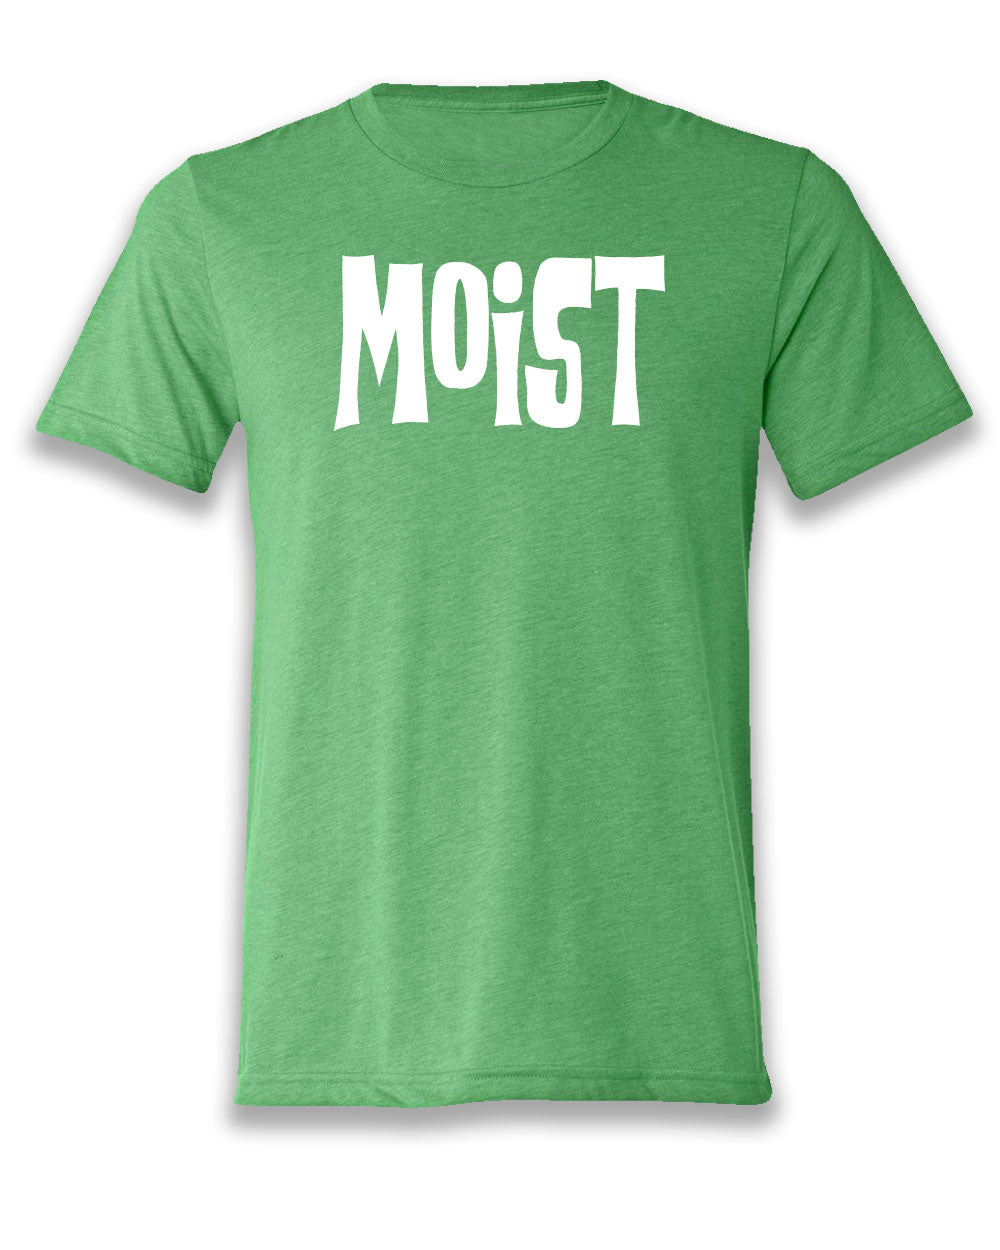 Moist T-shirt